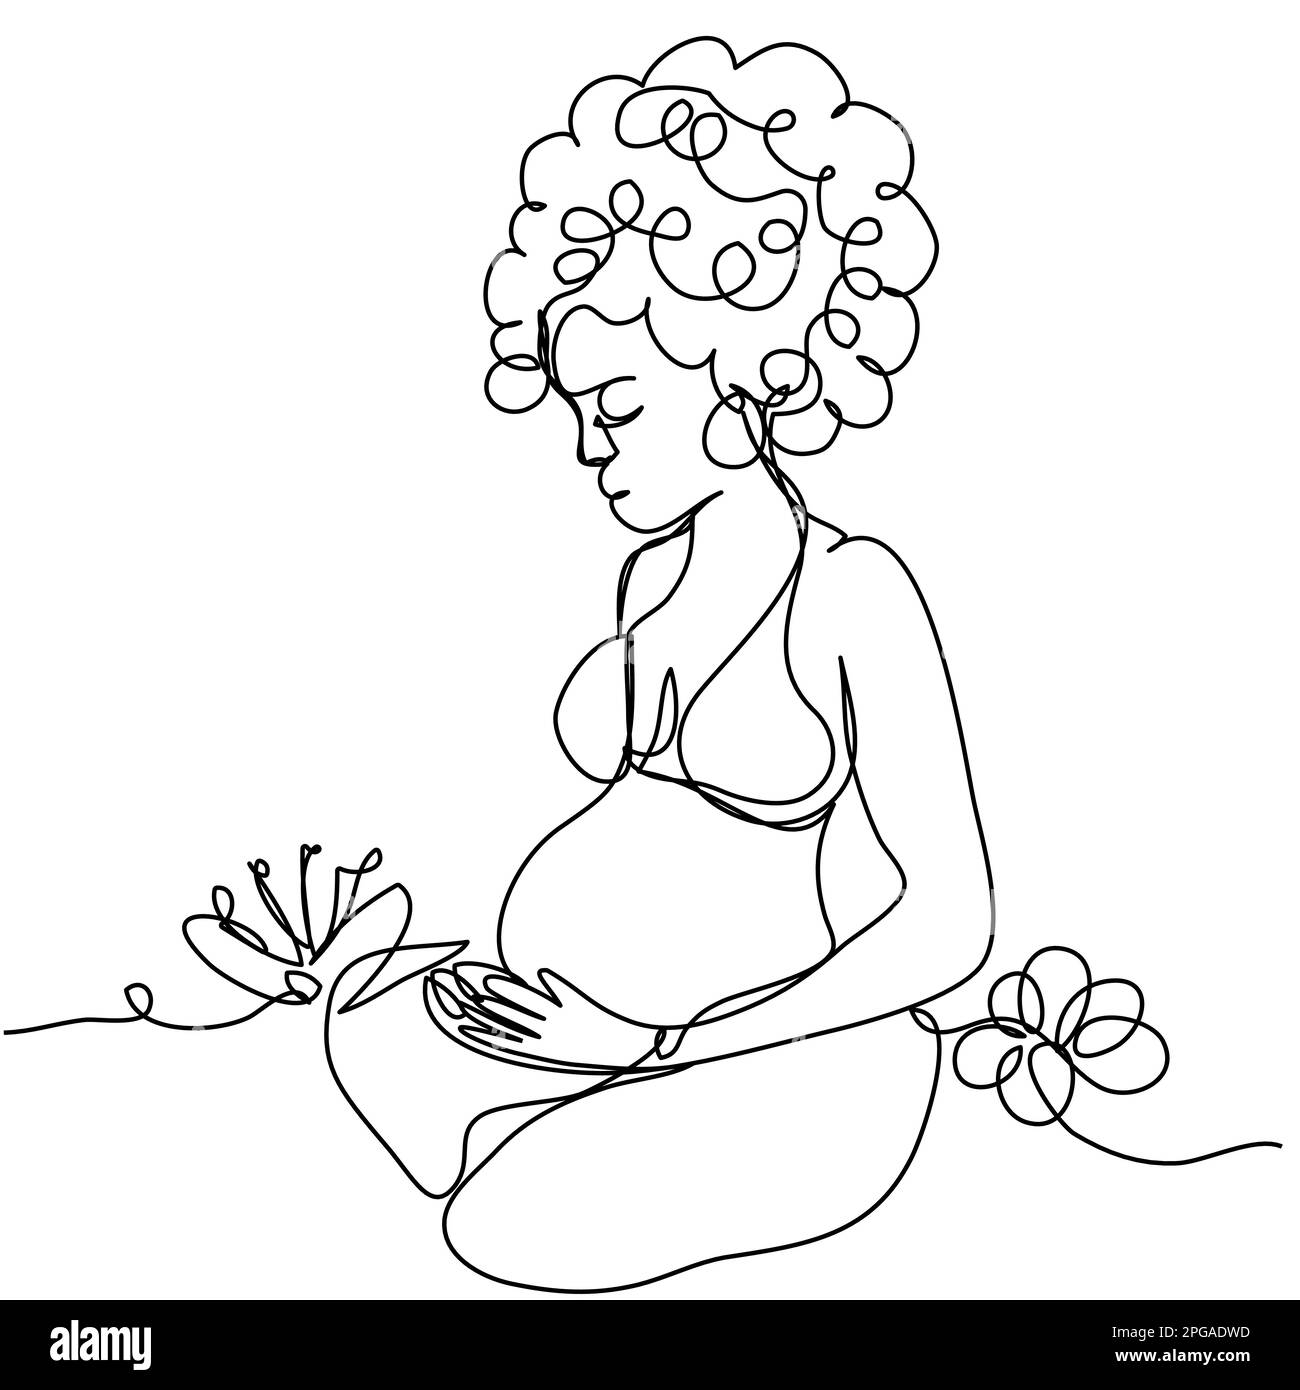 Une fille enceinte avec des boucles est assise dans une position de lotus sur une ligne sur un fond blanc. Le concept de plaisir, de calme, d'espérance d'un enfant. A W Illustration de Vecteur